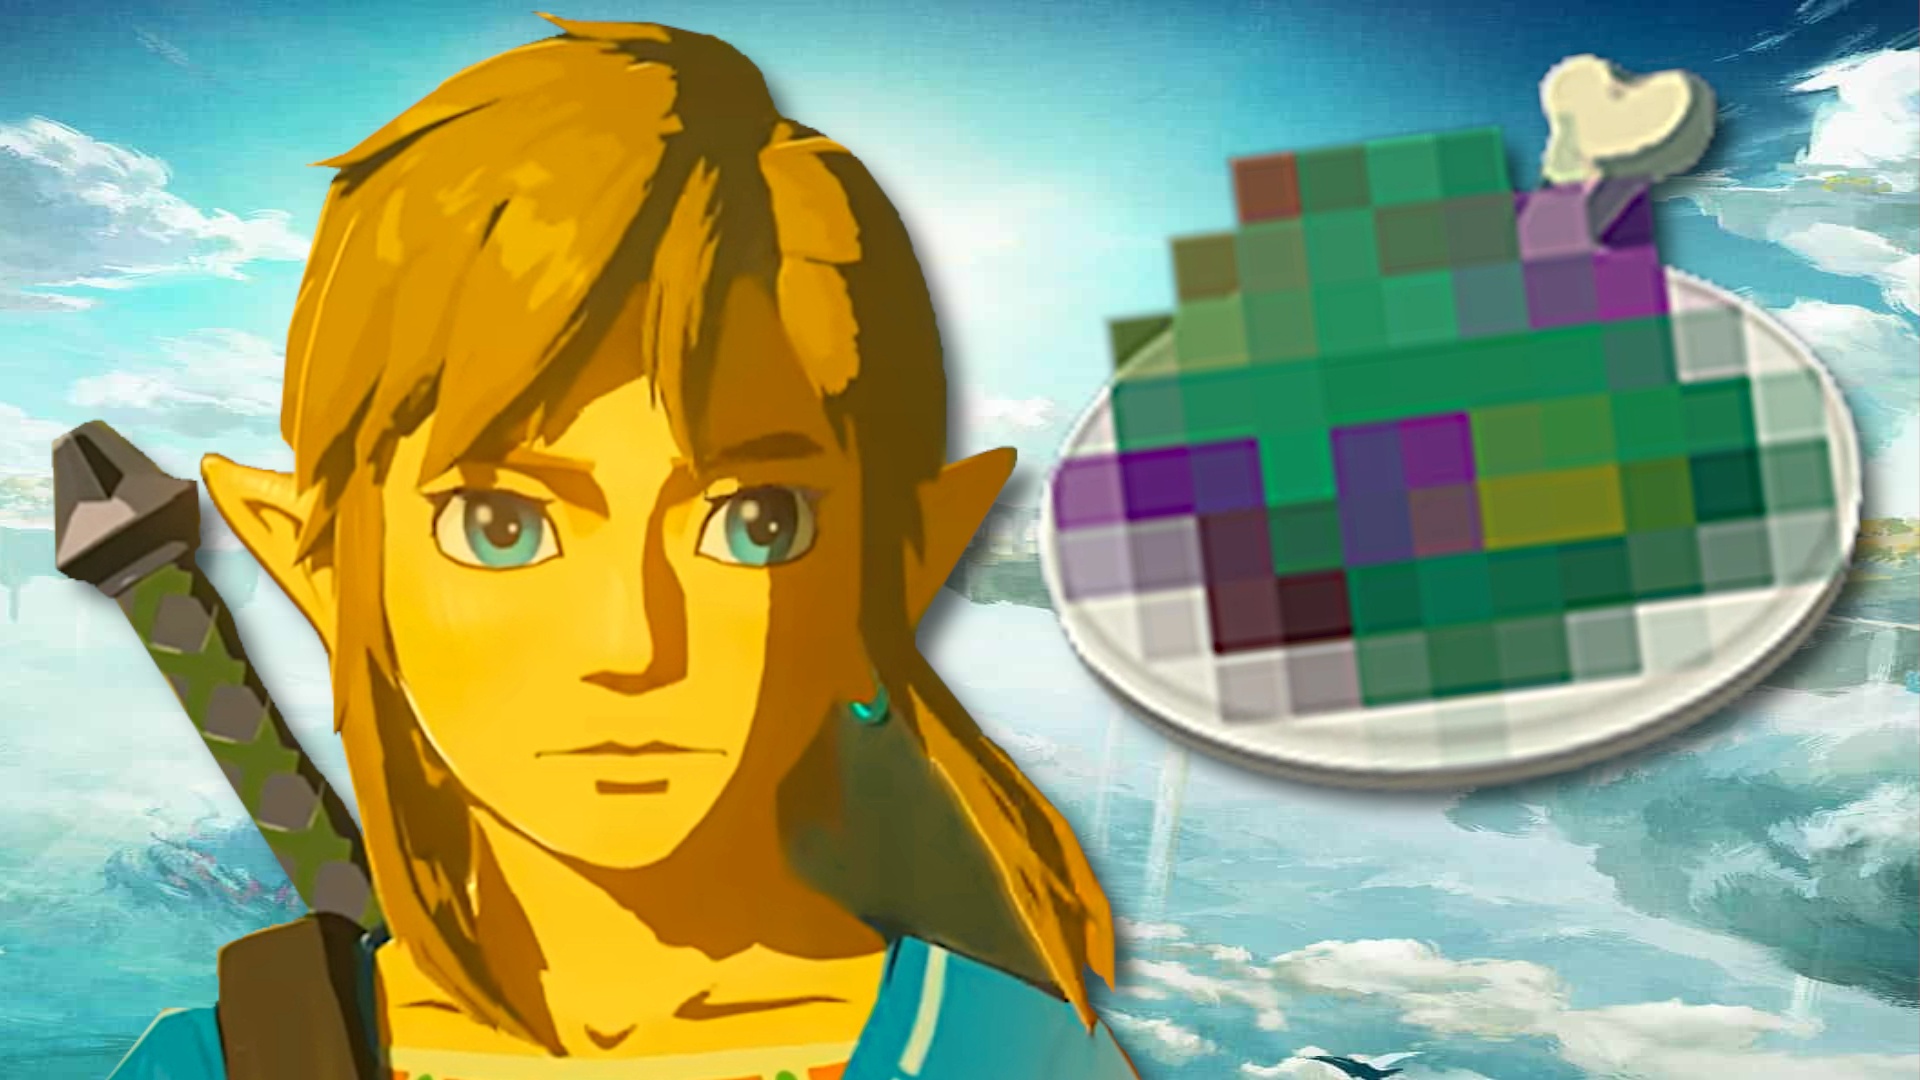 #Zelda-Spieler entdeckt nach 435 Stunden einen Trick, der das schlechteste Item super wertvoll macht